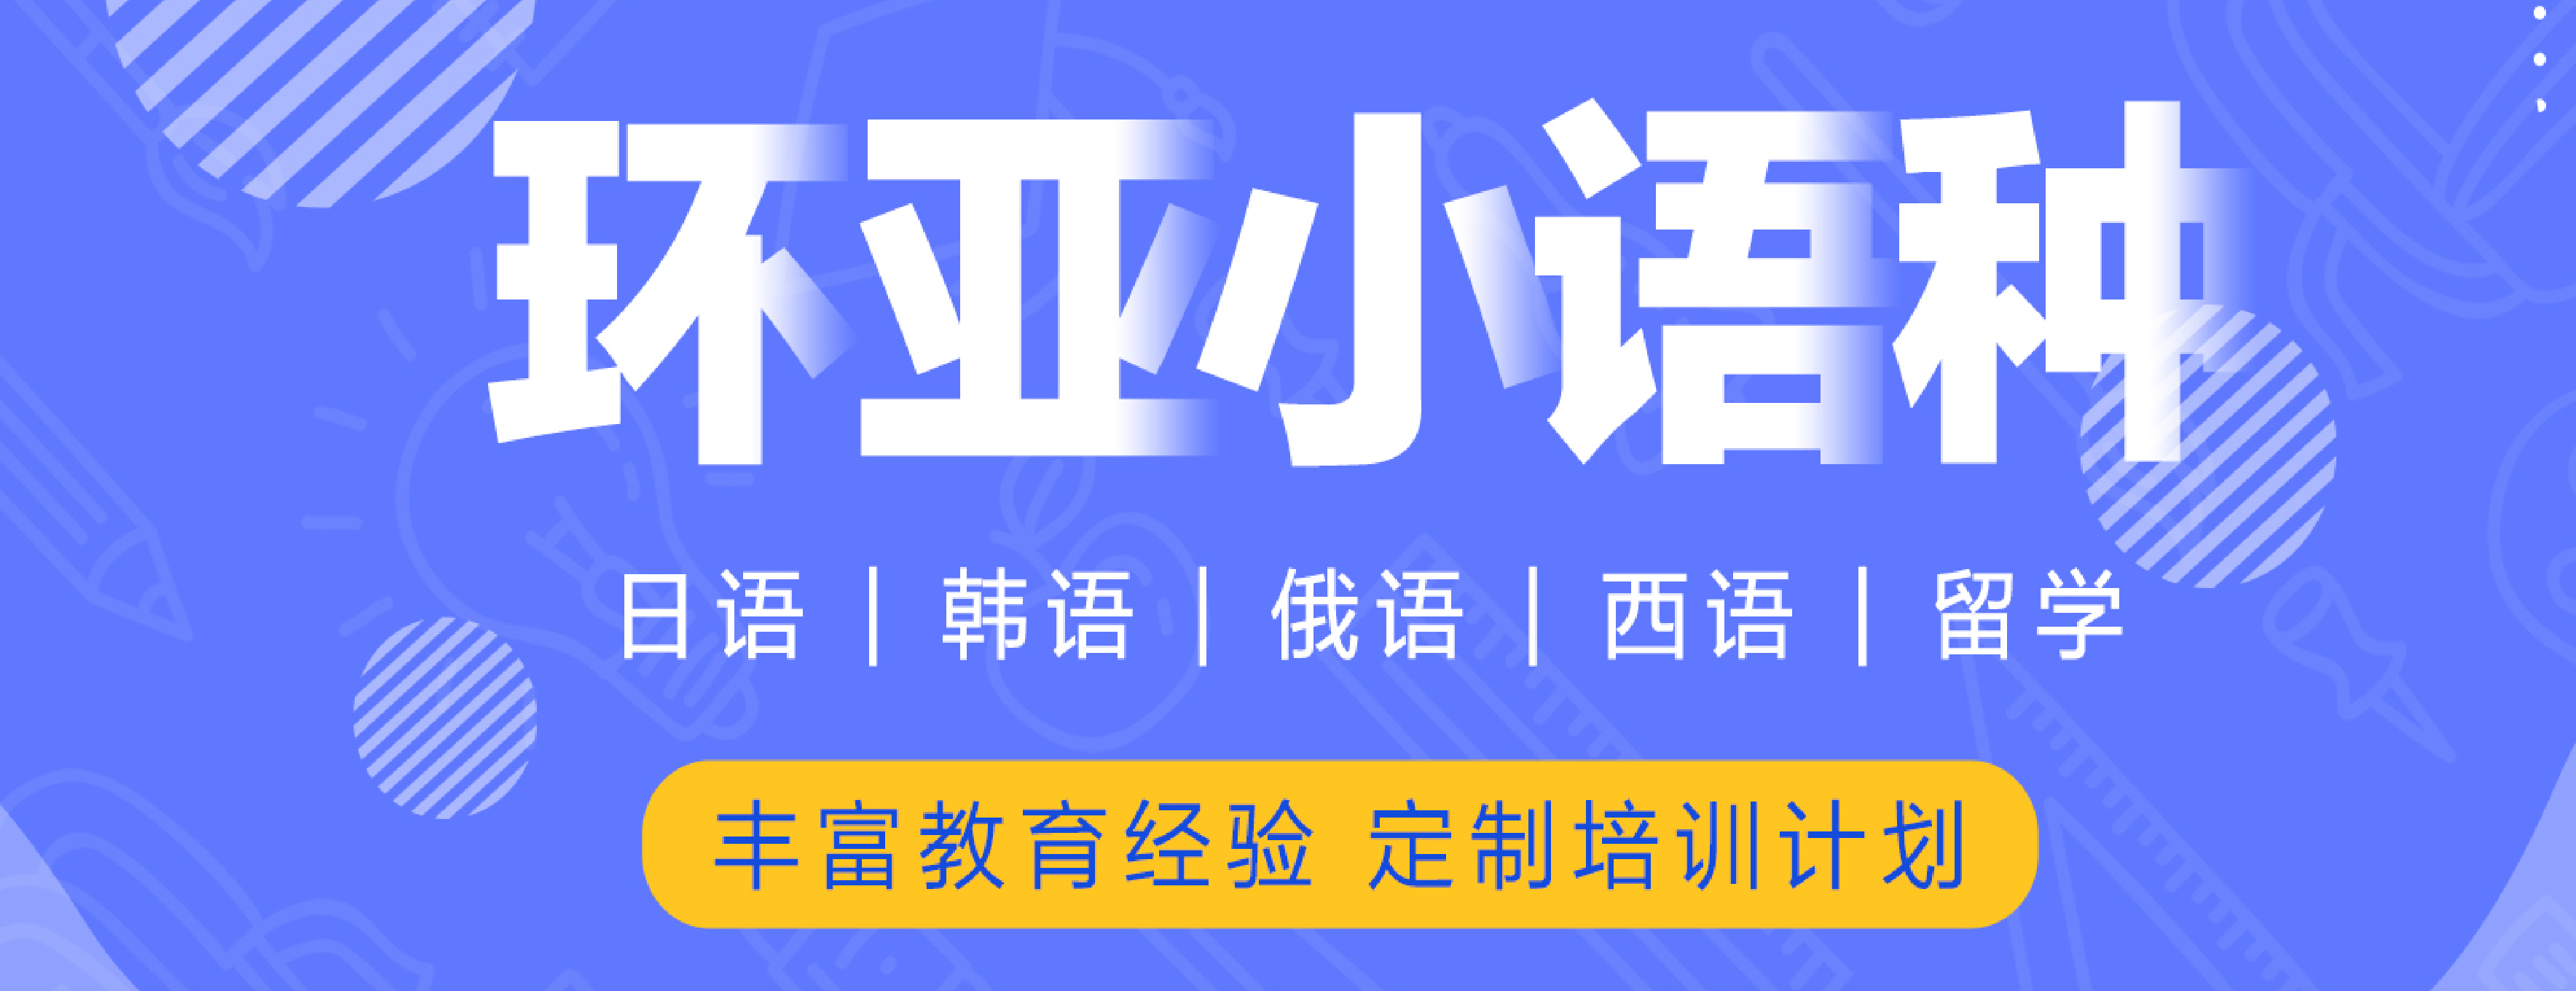 南京环亚语言培训中心banner